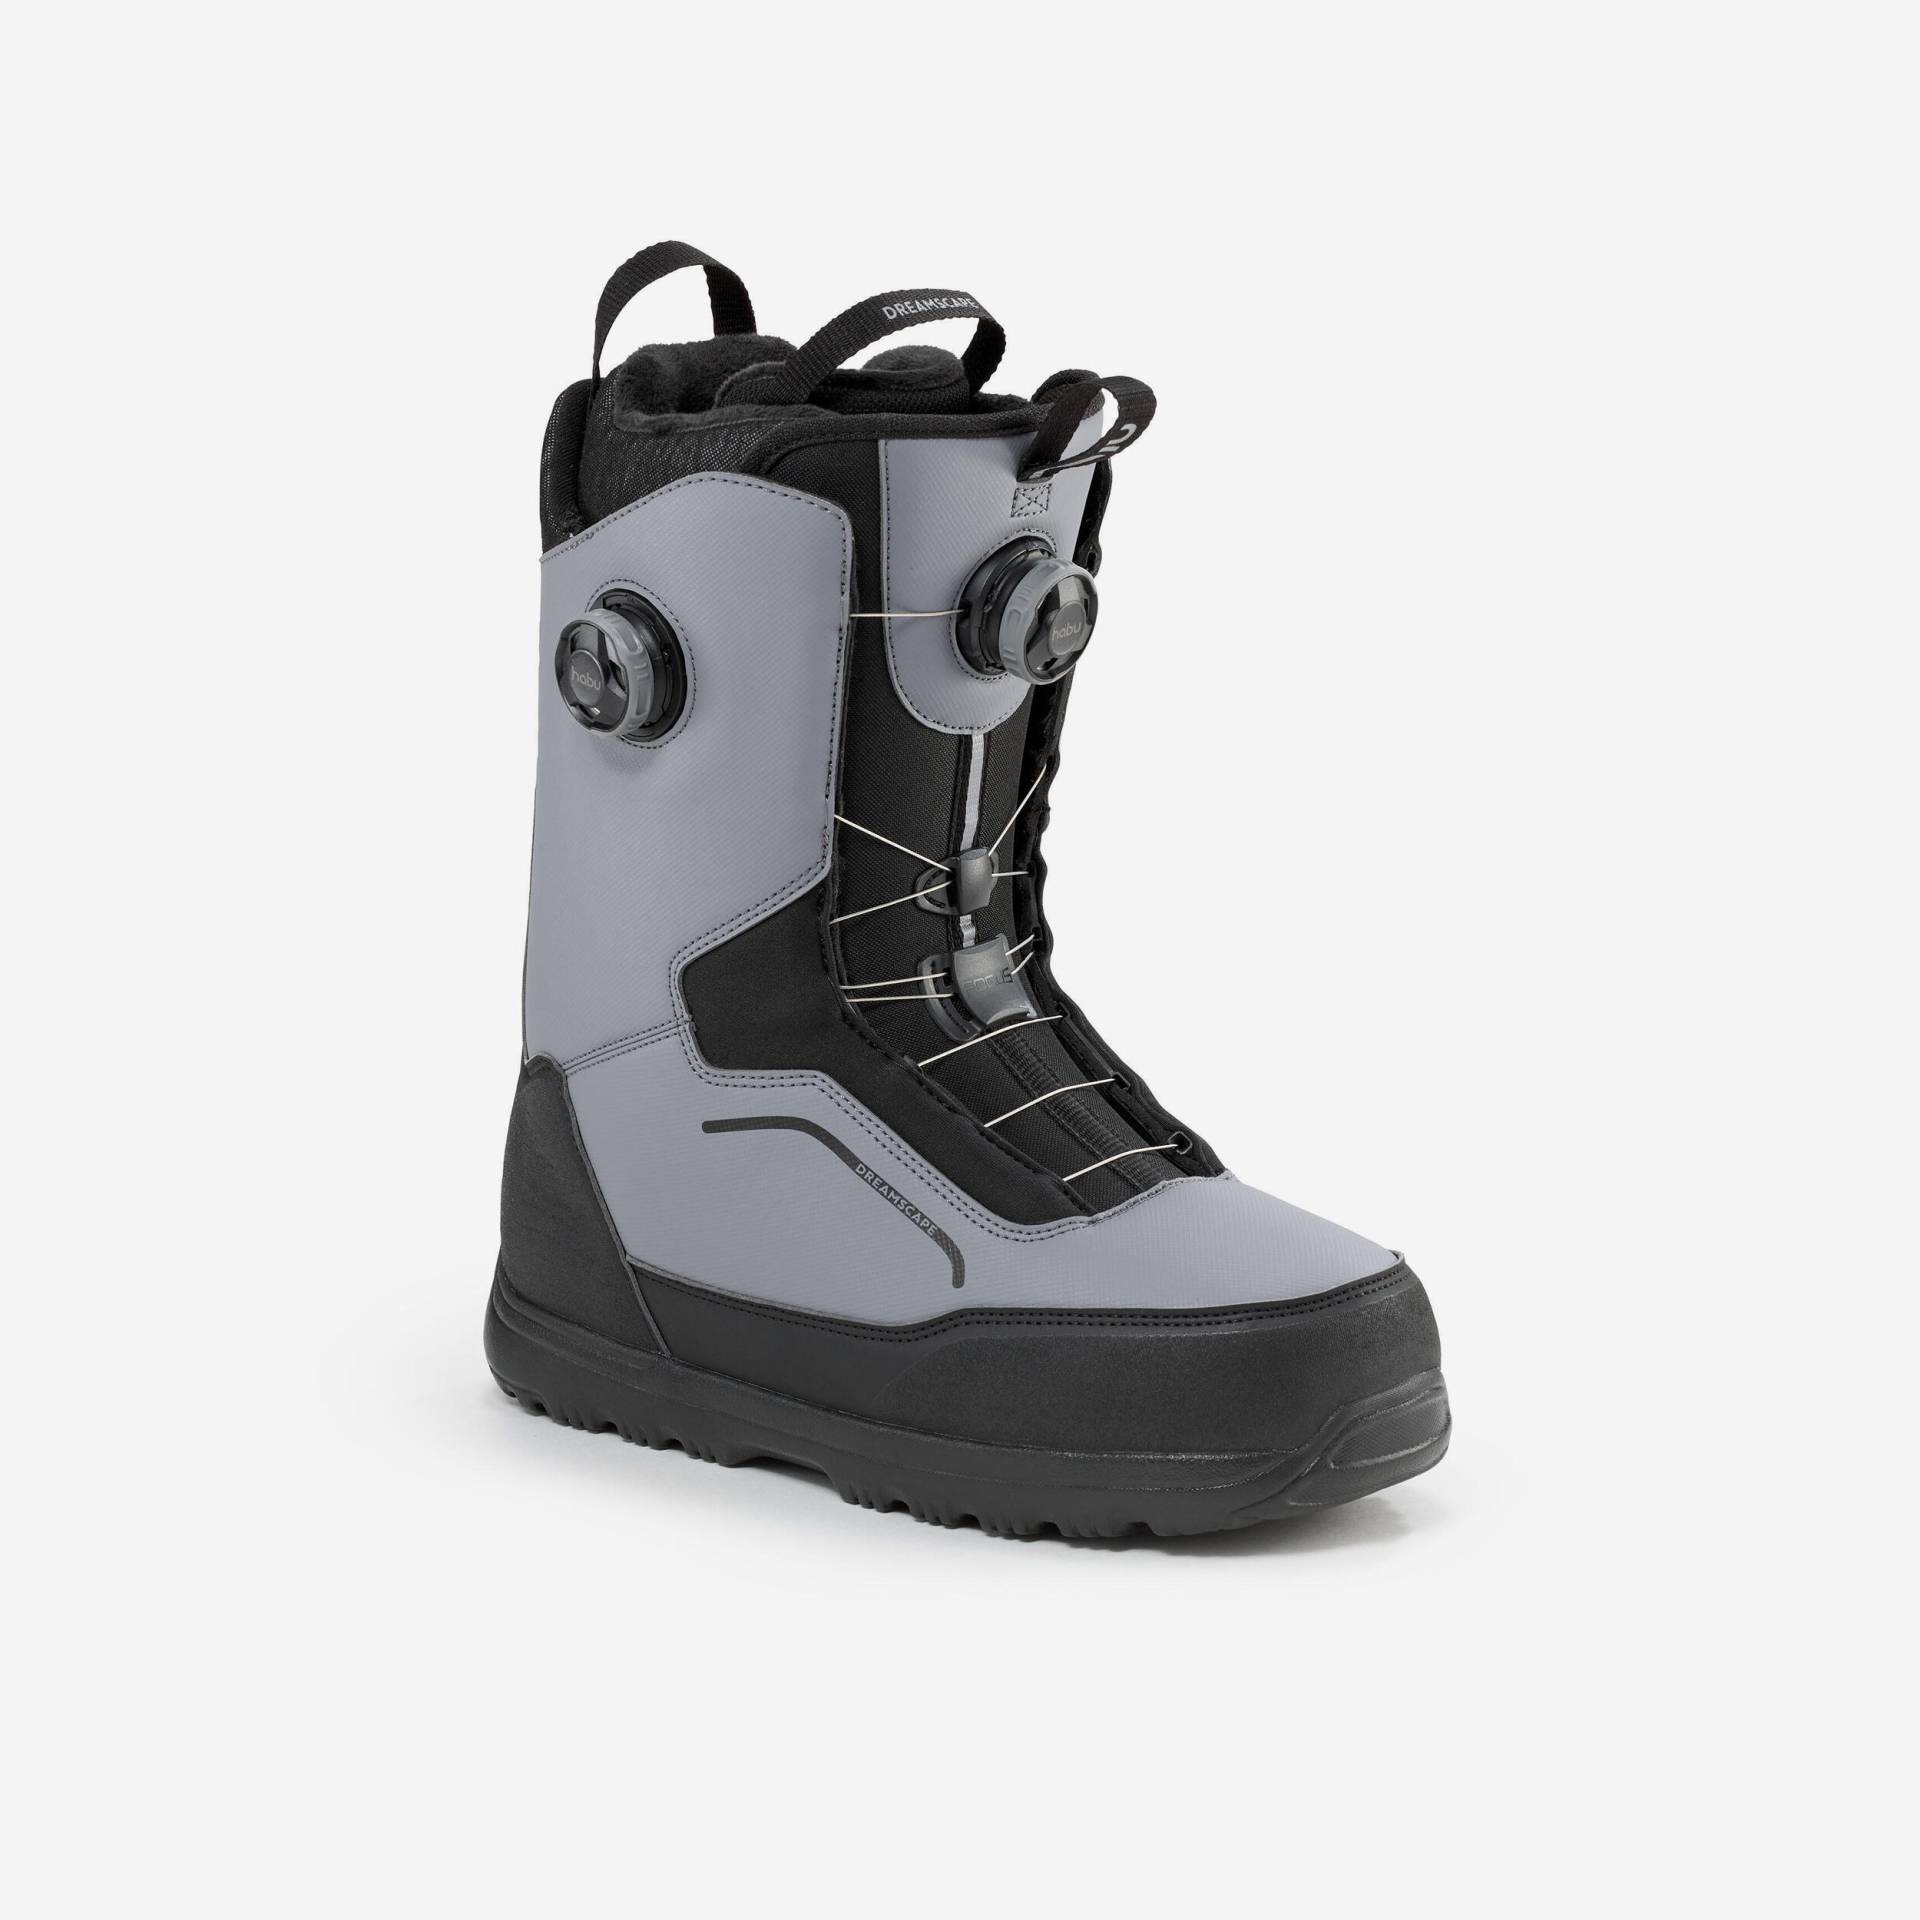 Snowboard Boots doppelter Drehverschluss starrer Flex - Allroad 900 grau von DREAMSCAPE